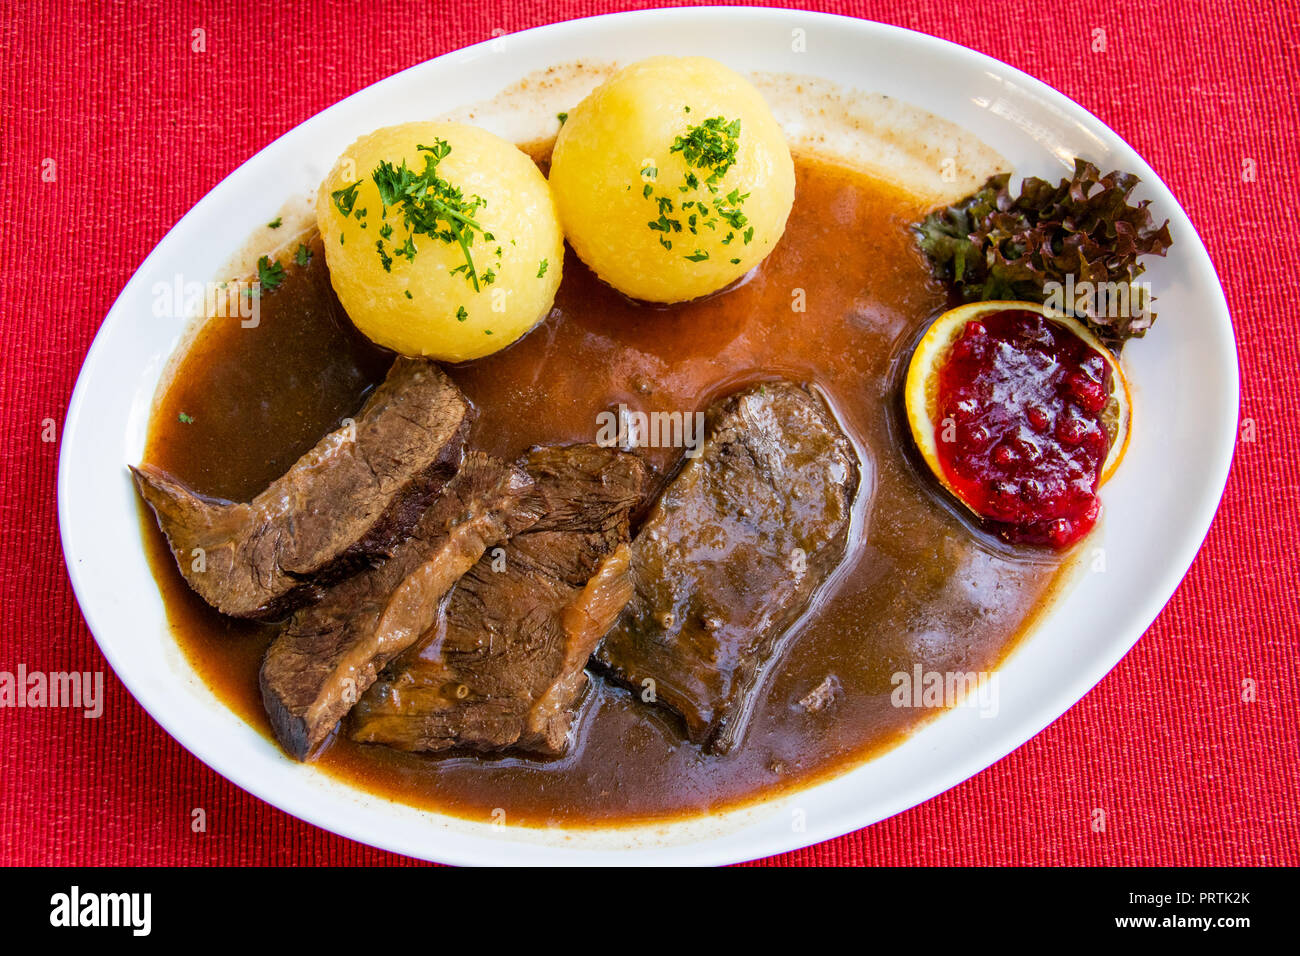 Franconian Sauebraten, beef marinated in vinegar and herbs, Elke's Bierstadl im Kettensteg, Nuremberg, Germany Stock Photo